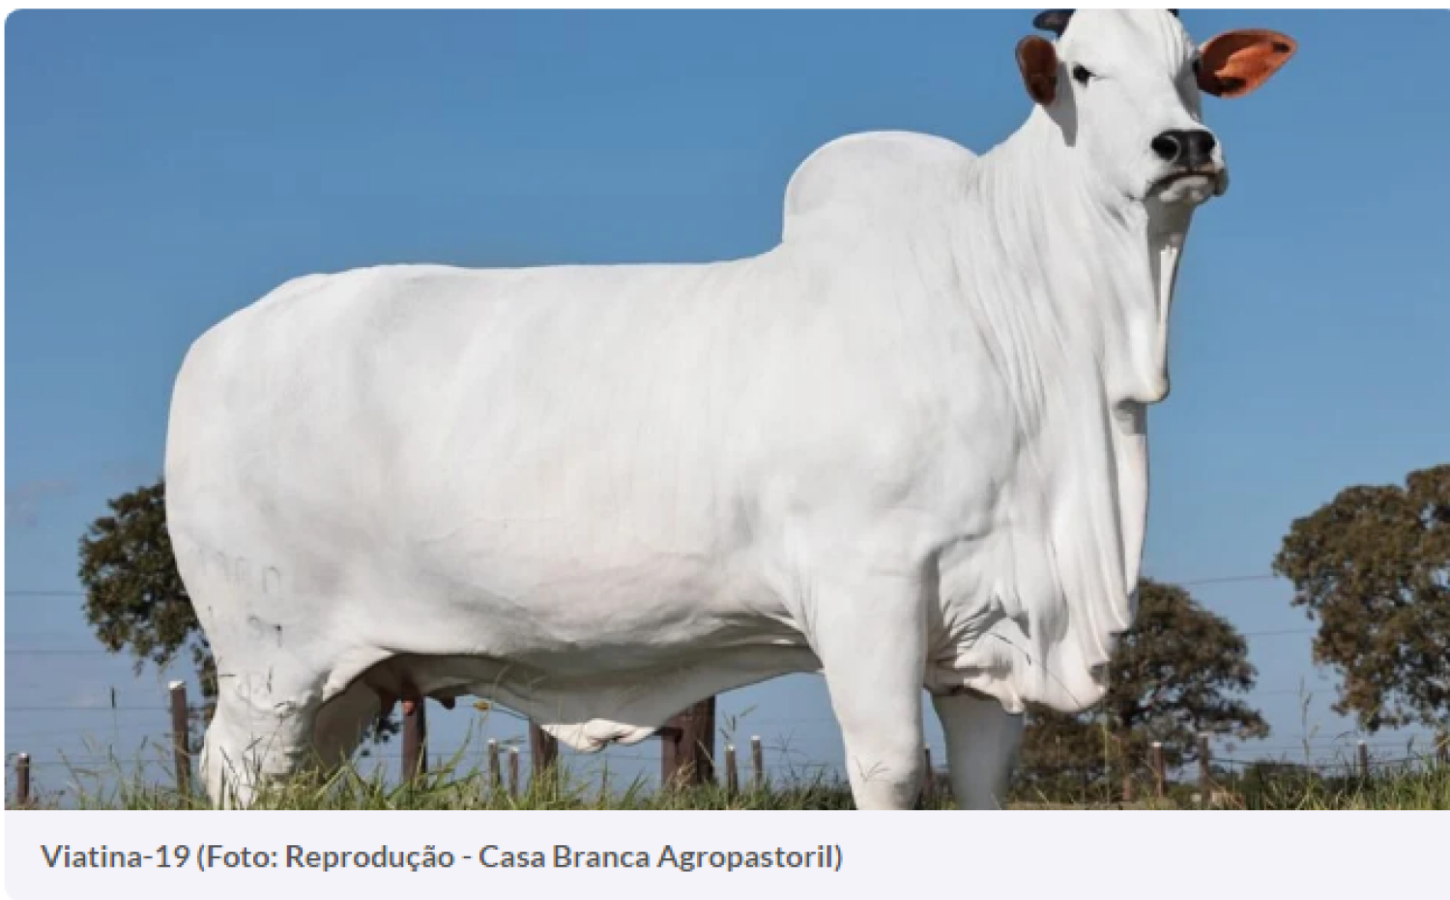 Vaca de Goiás é considerada a mais cara do mundo